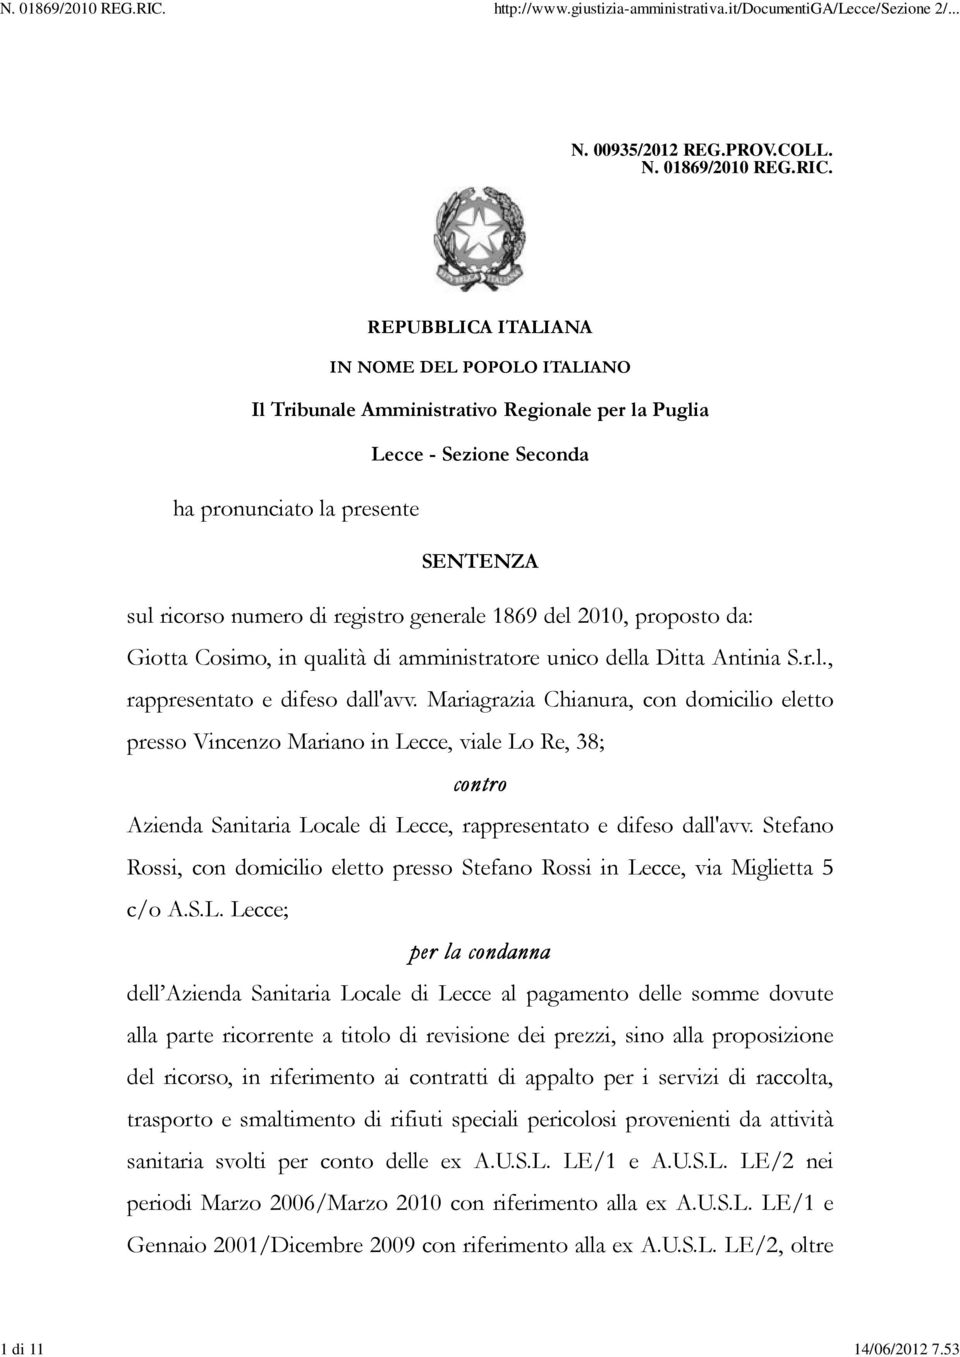 1869 del 2010, proposto da: Giotta Cosimo, in qualità di amministratore unico della Ditta Antinia S.r.l., rappresentato e difeso dall'avv.